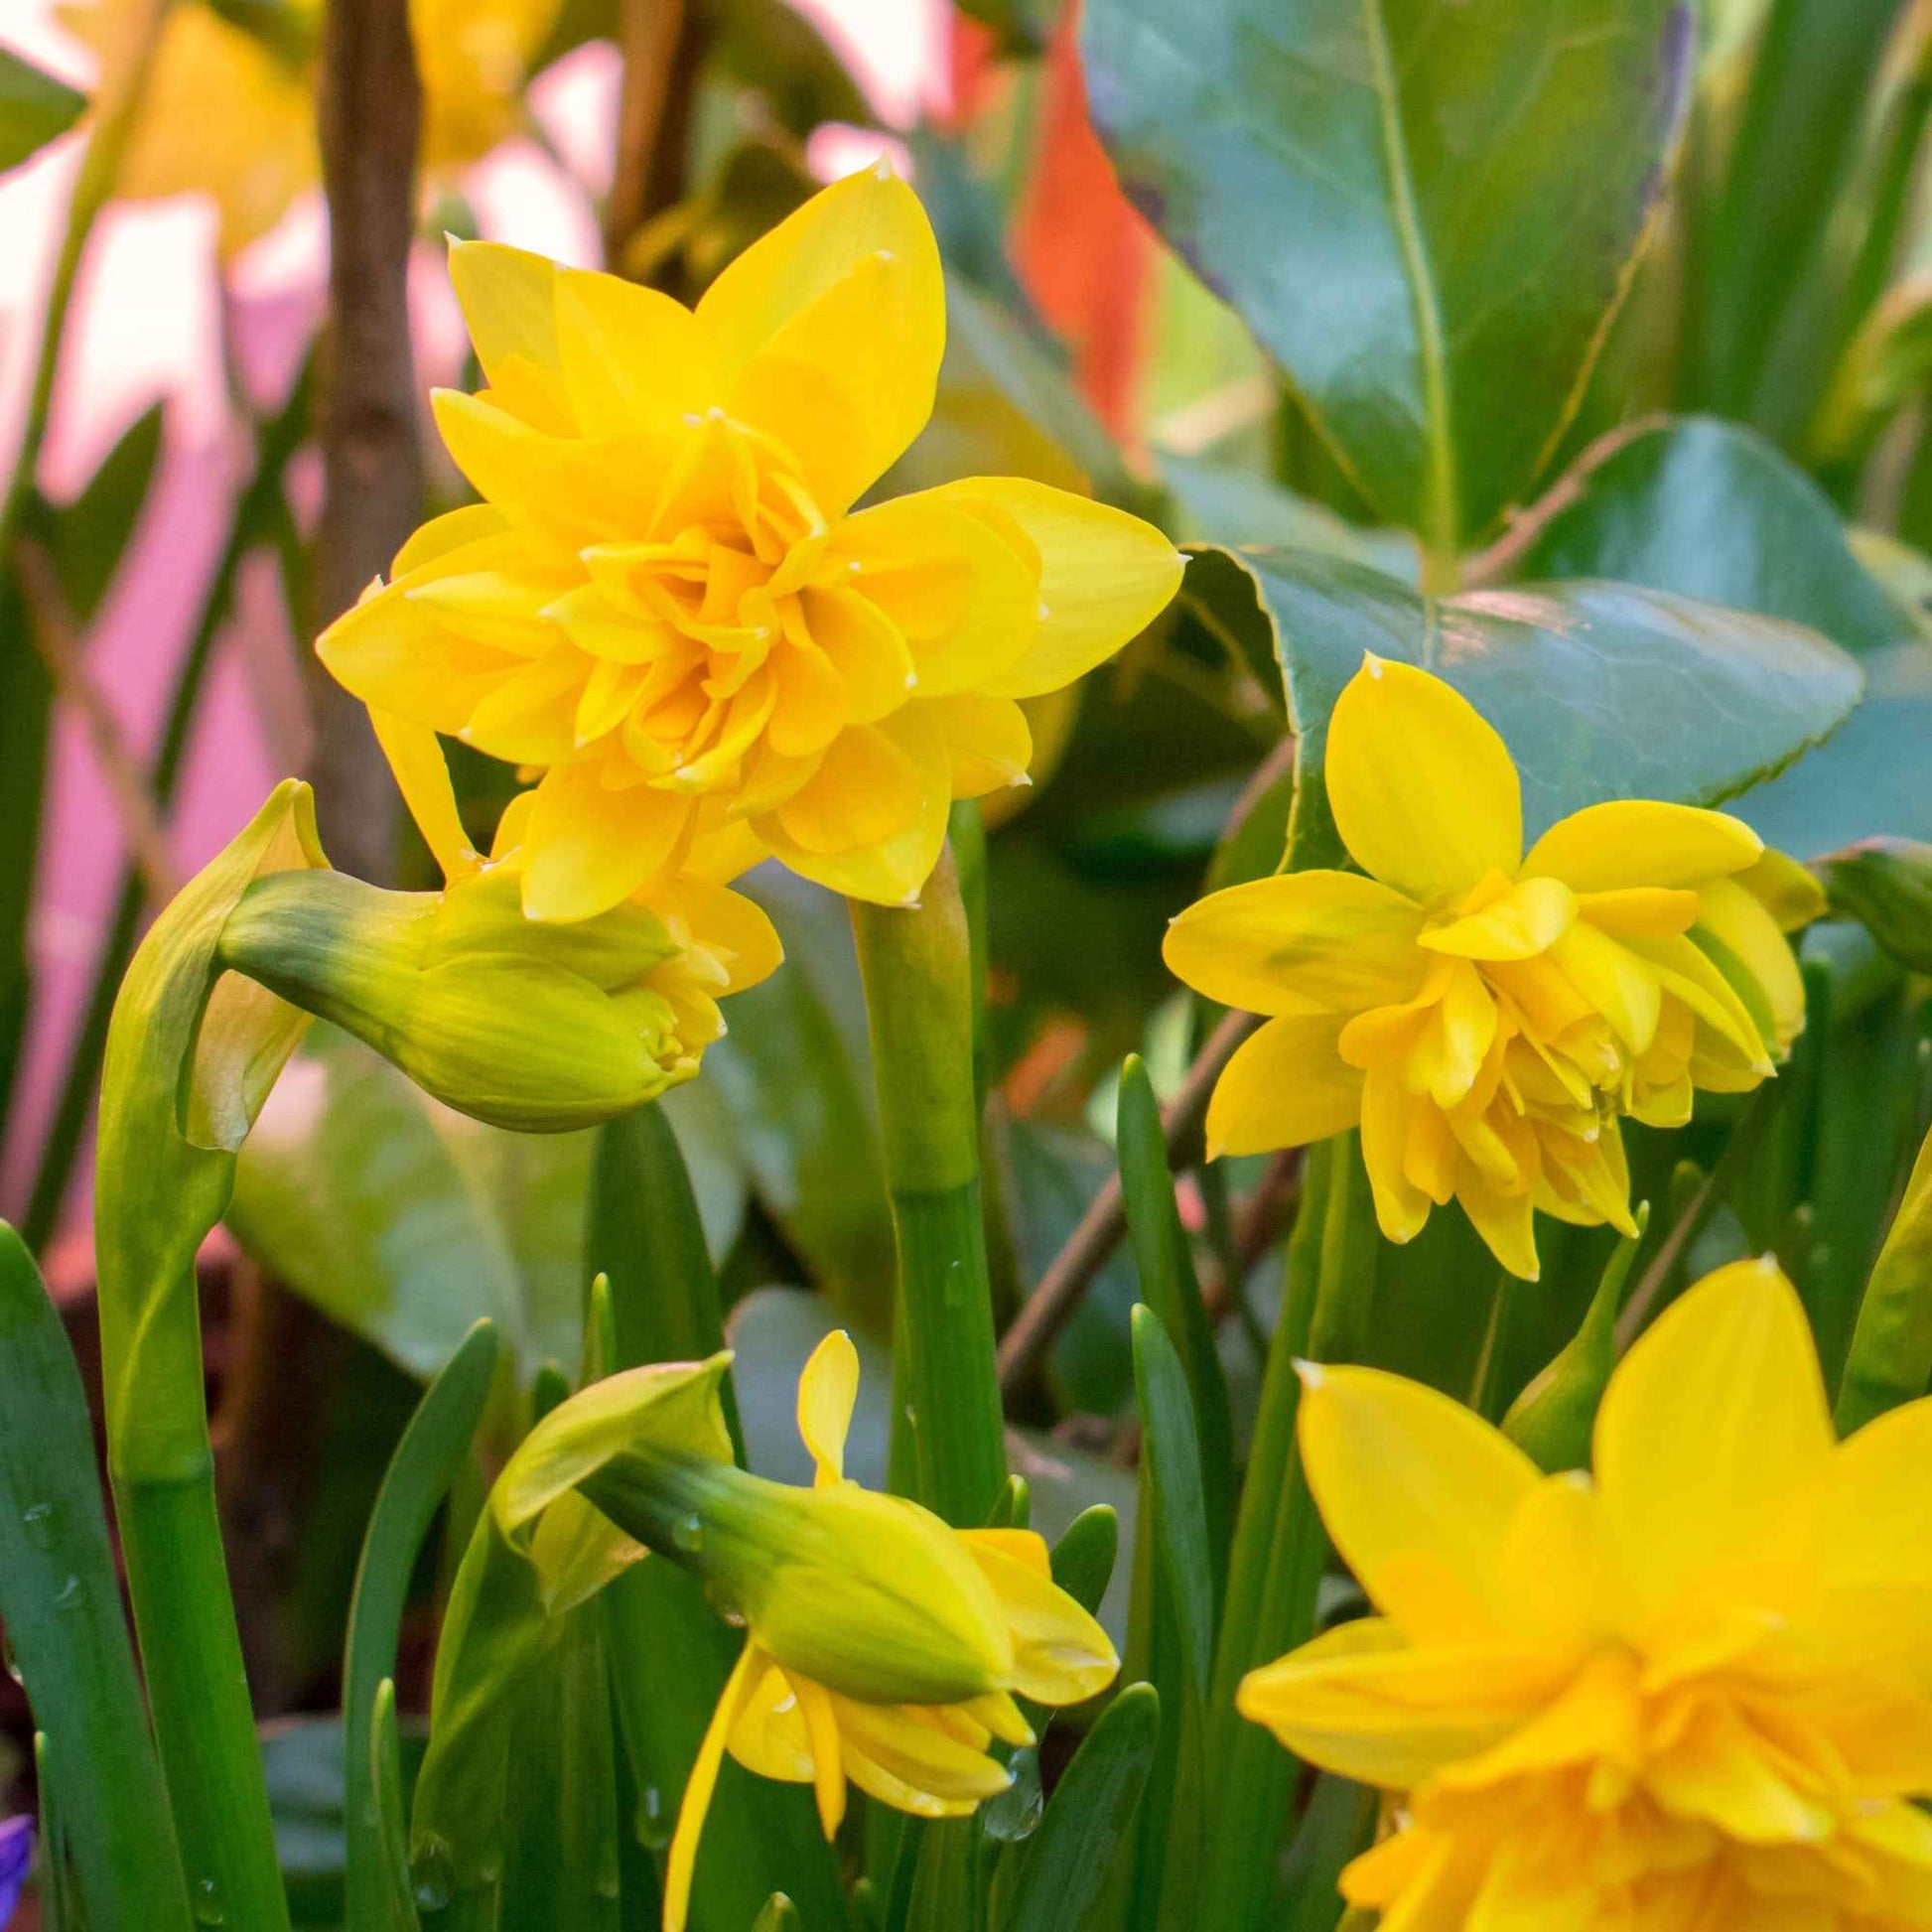 25x Narzisse Narcissus 'Tete Boucle' doppelblütige gelb - Alle beliebten Blumenzwiebeln